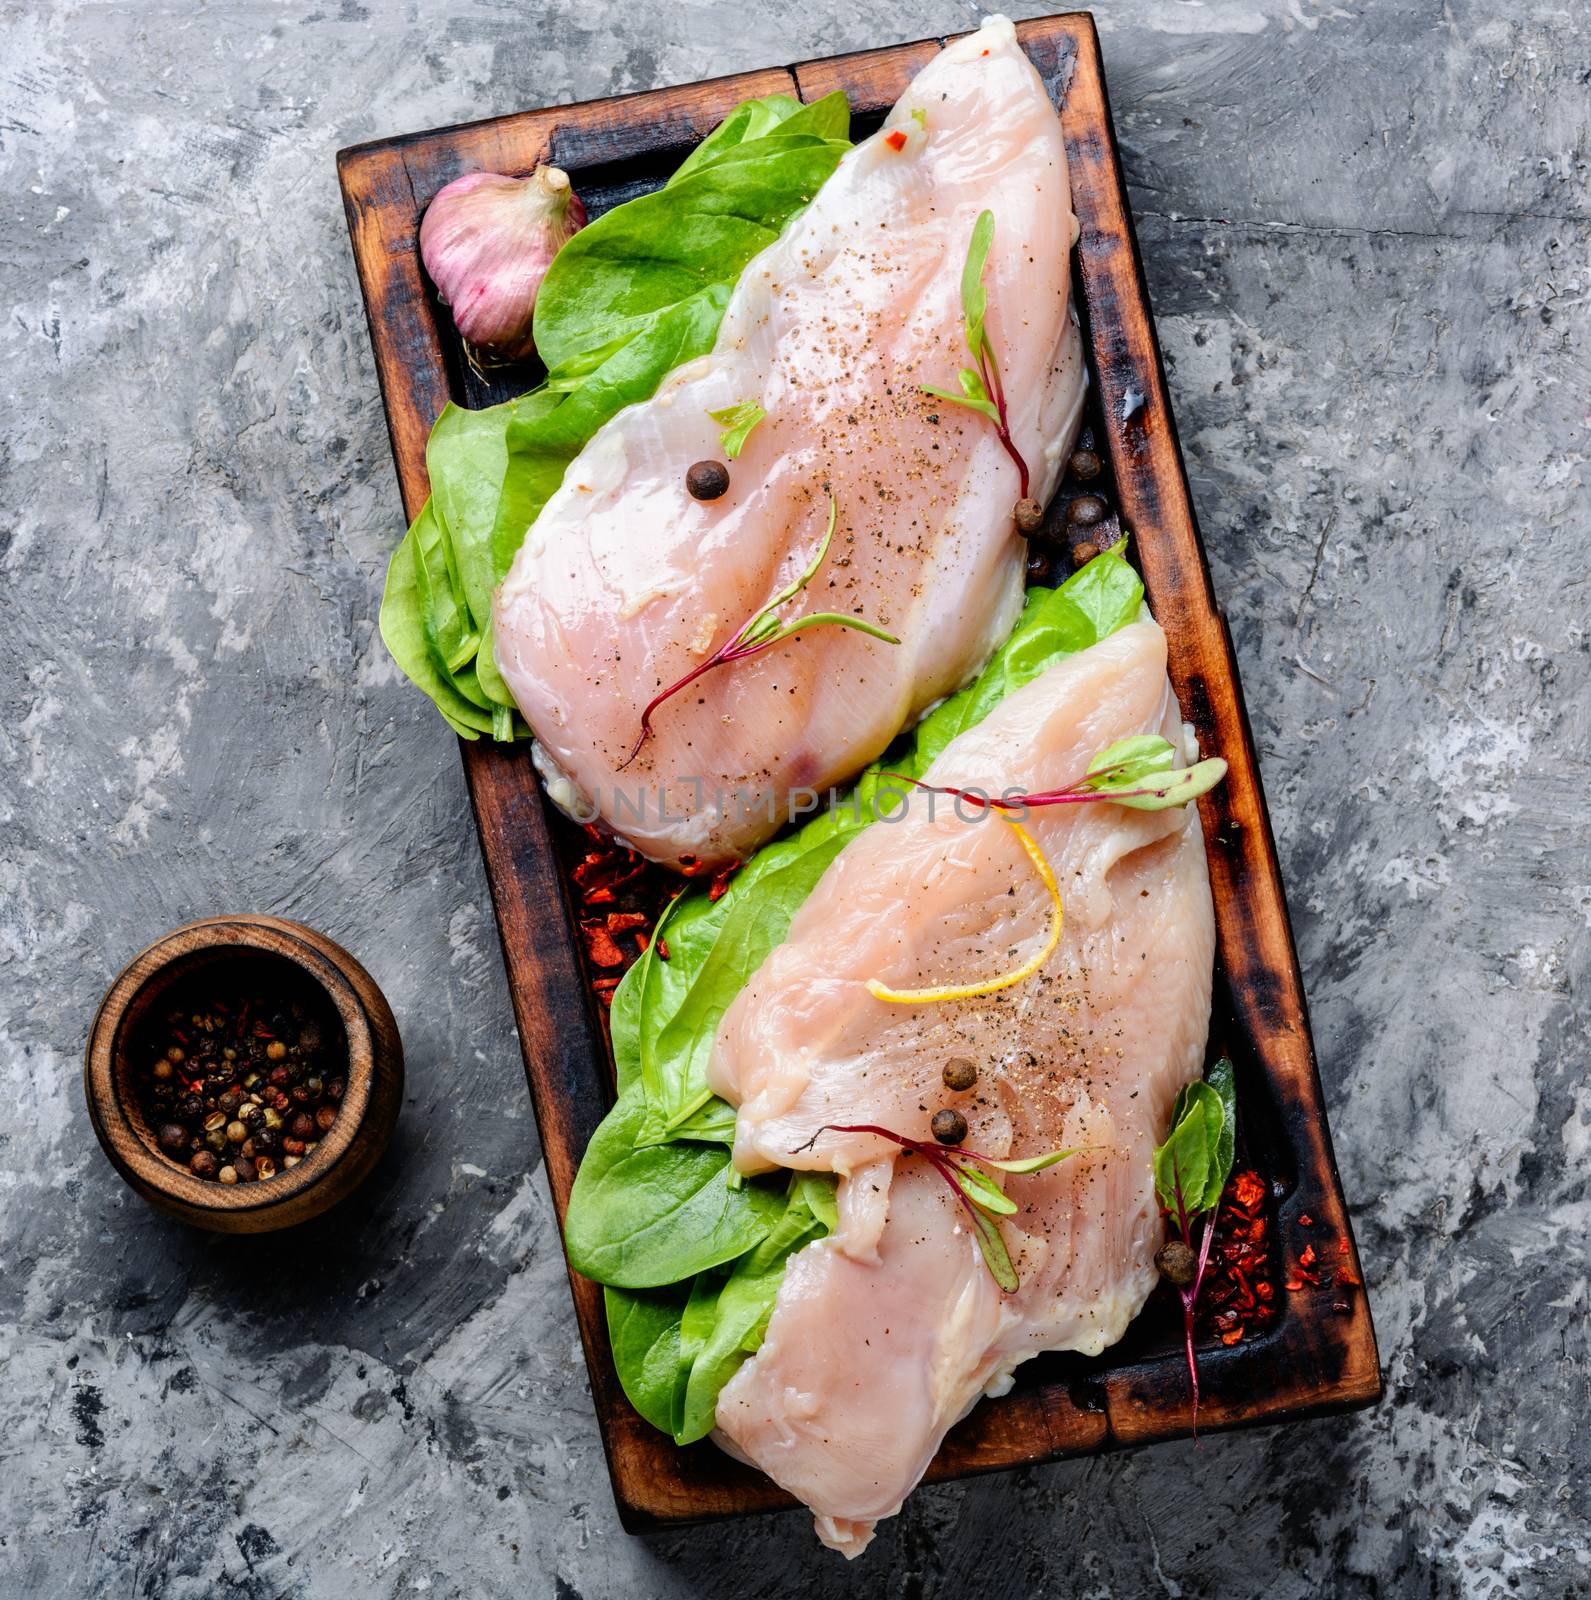 Fresh raw chicken on kitchen cutting board